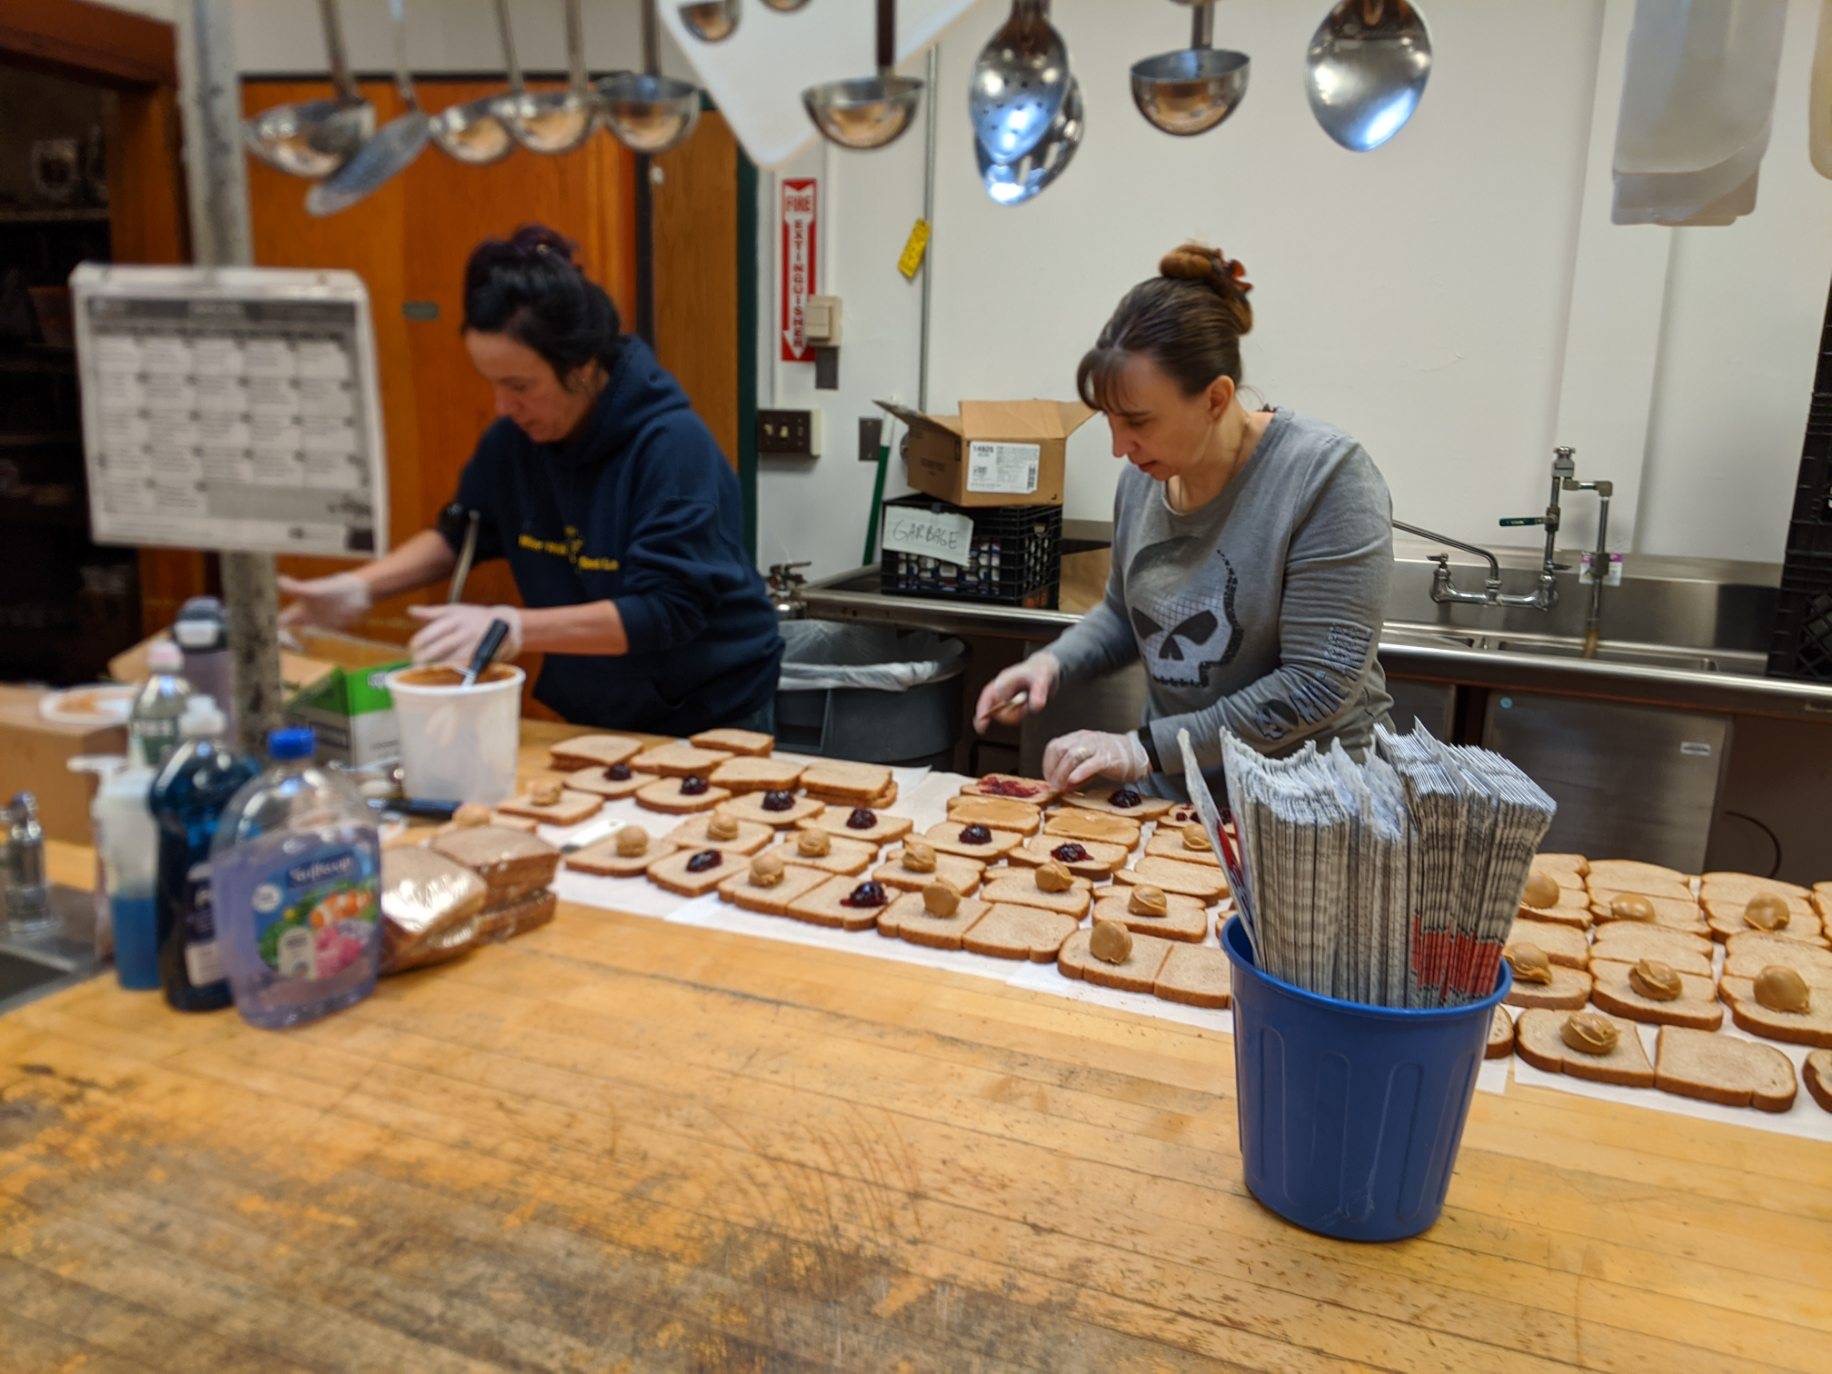 workers preparing food